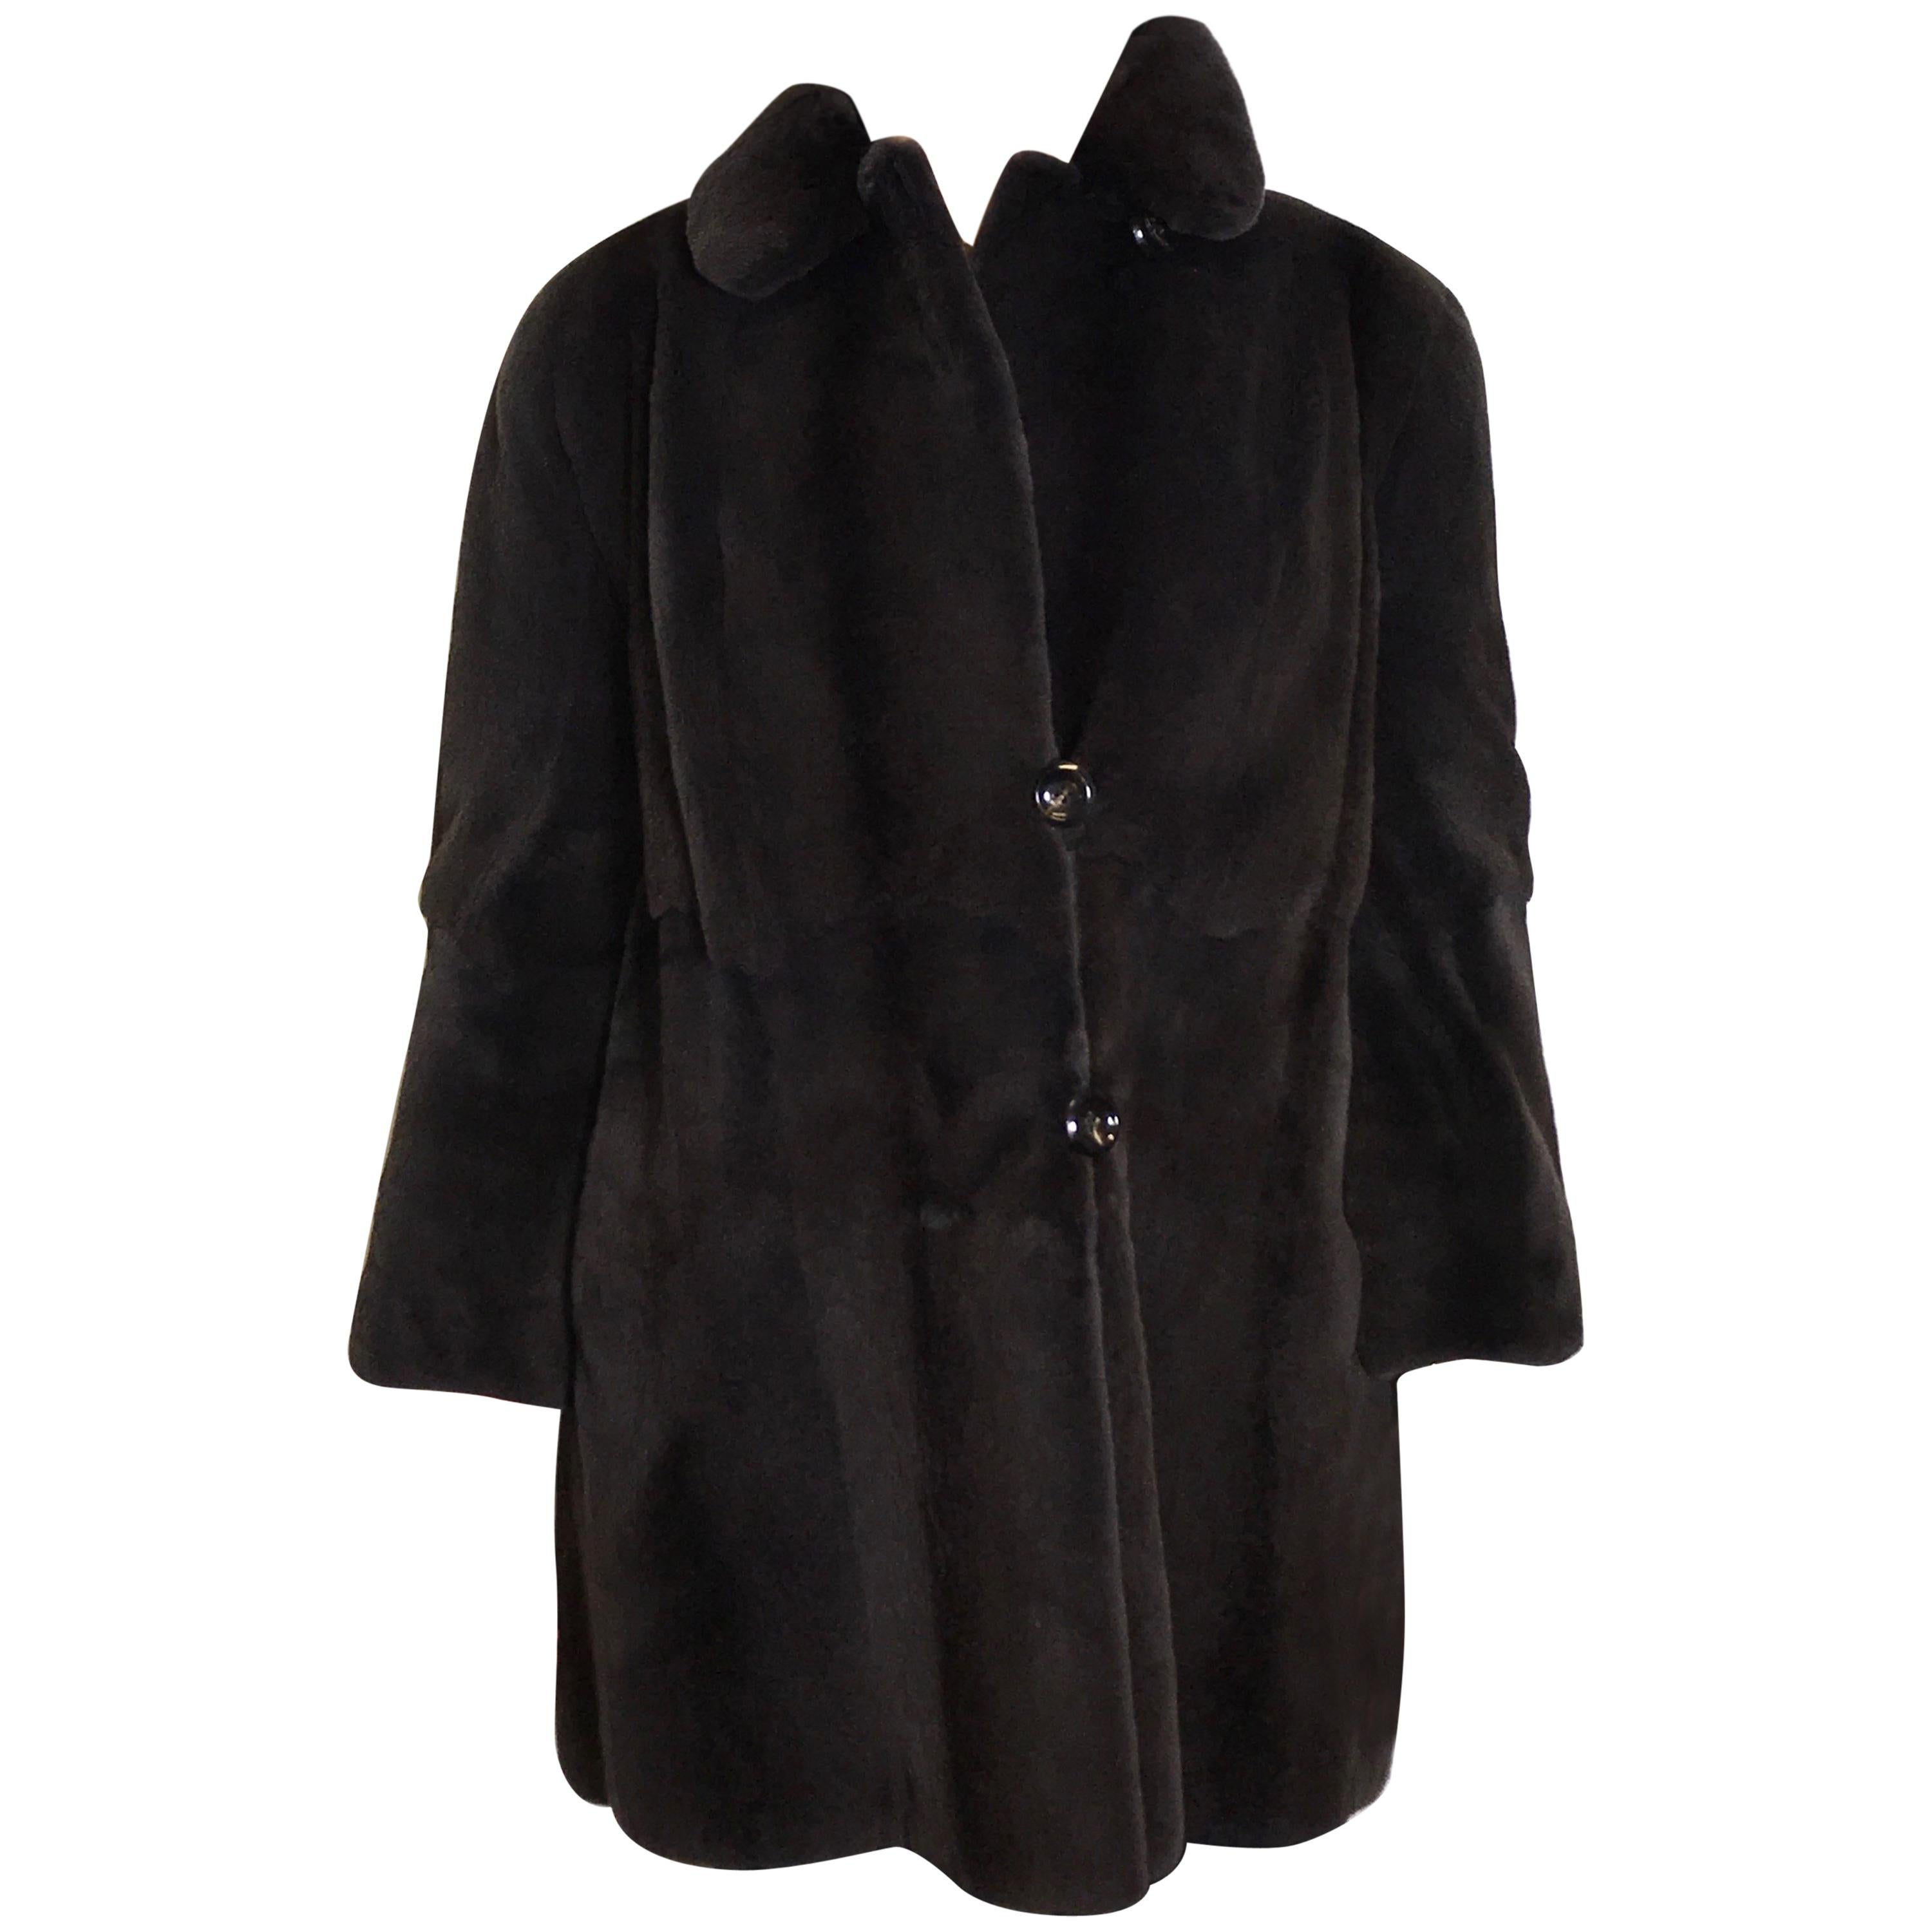 Sheared velvet silk mink fur jacket by FECHNER. Black/dark gray. (6) For Sale